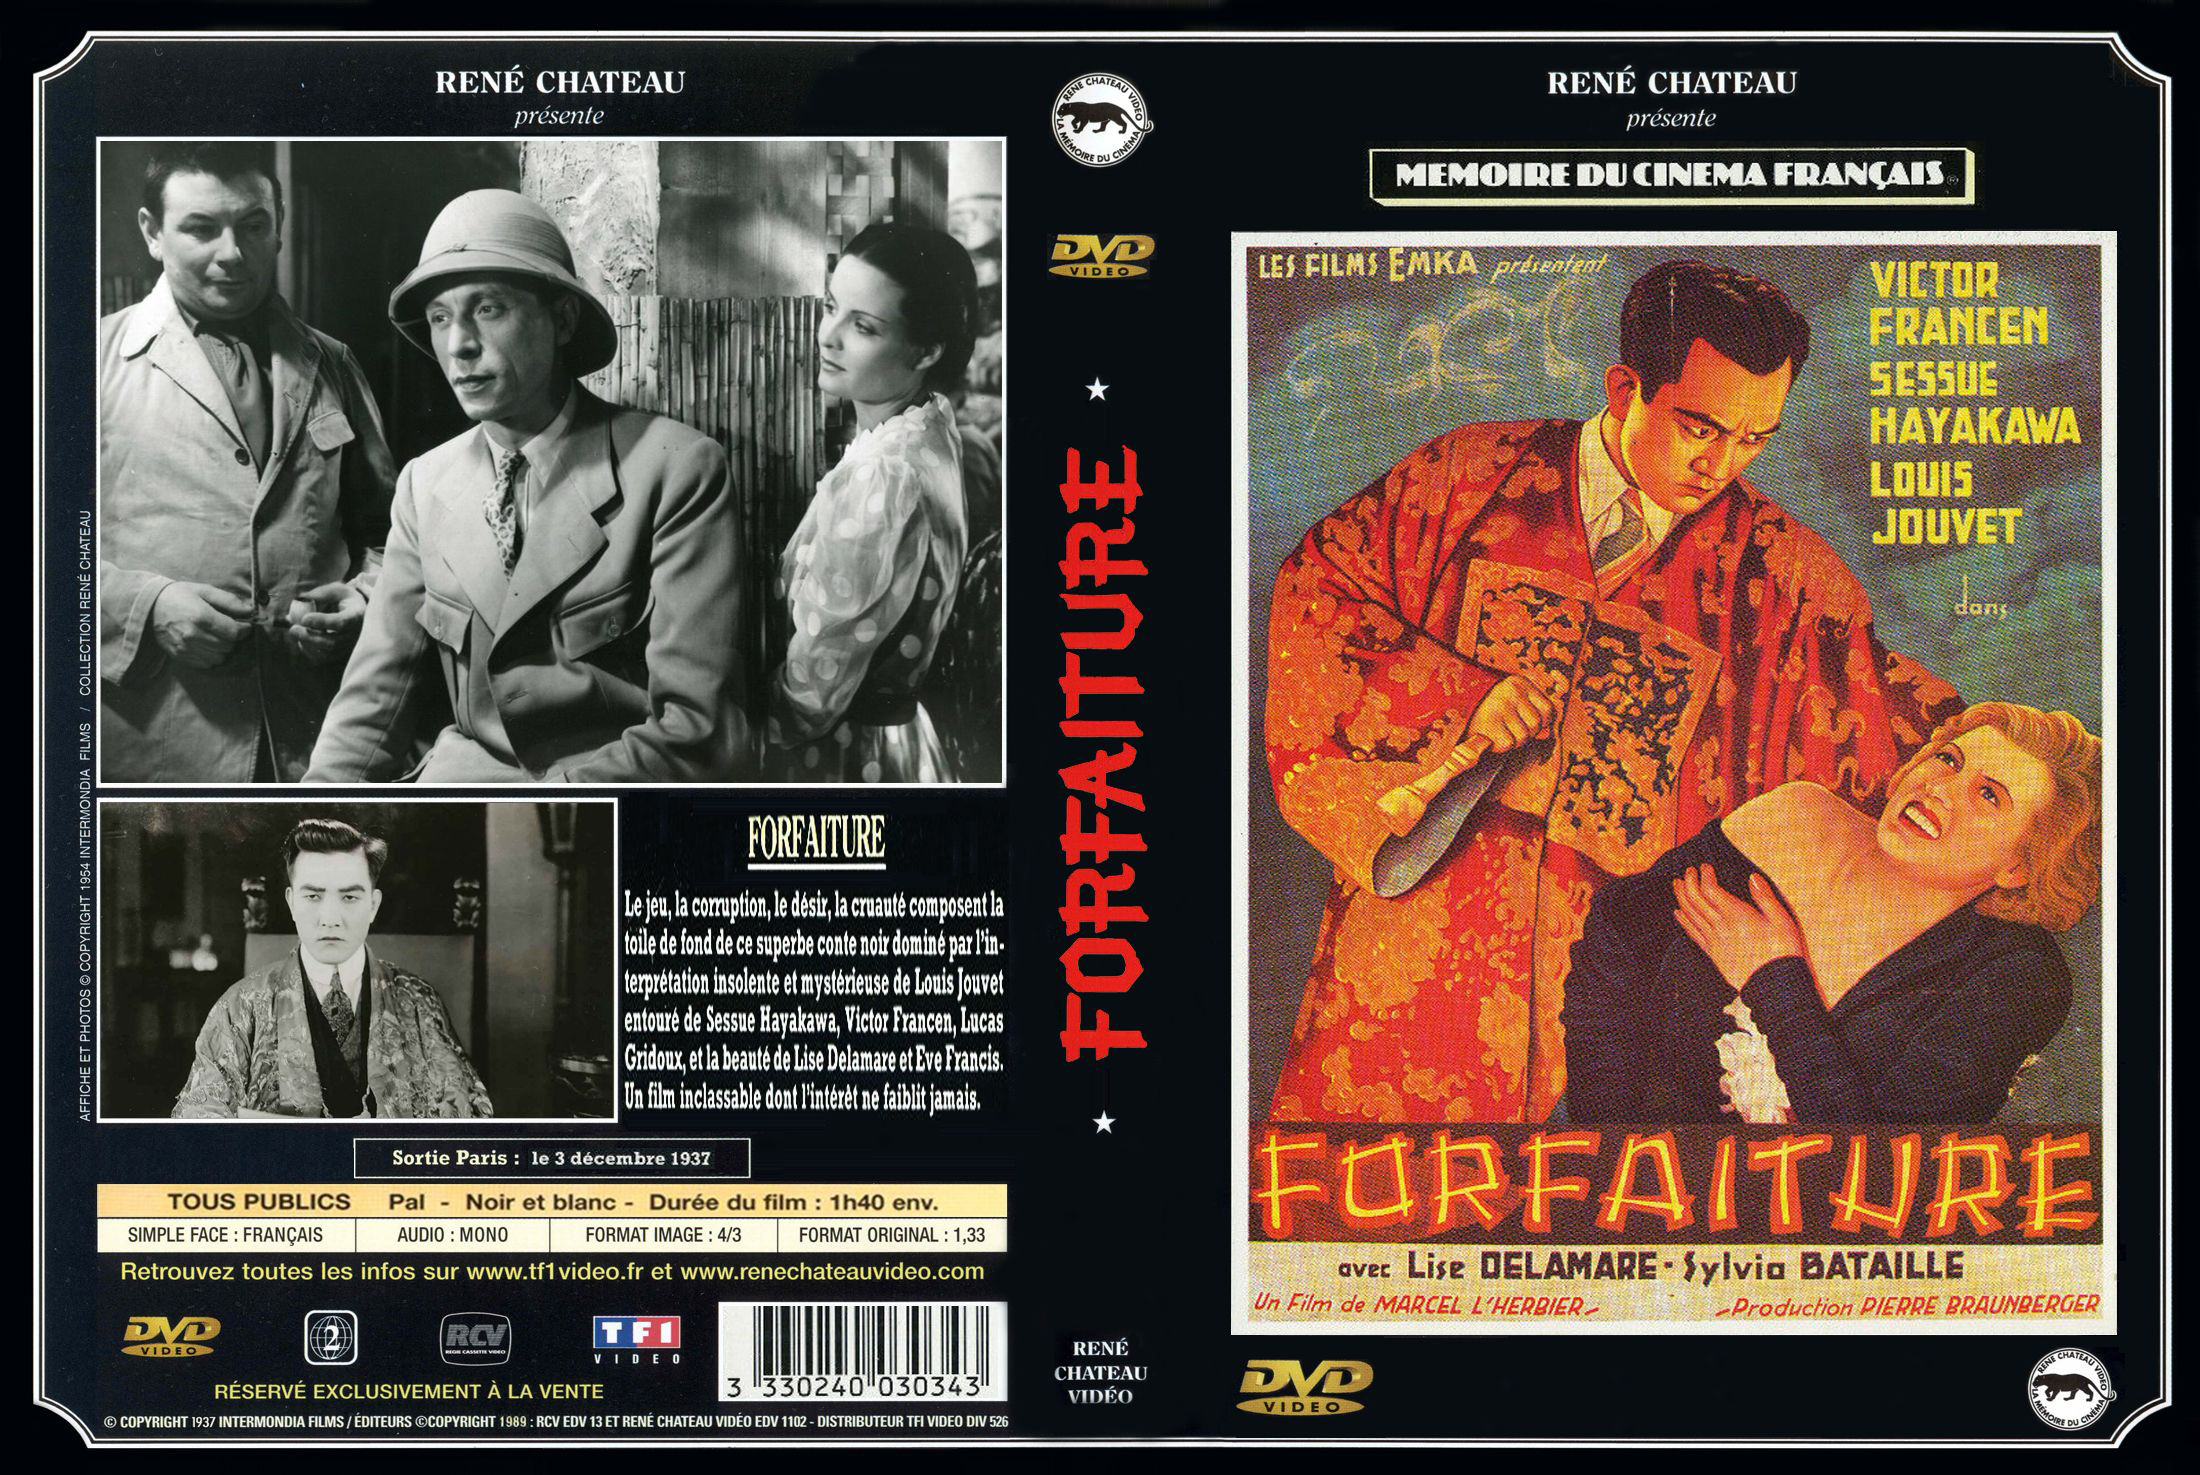 Jaquette DVD Forfaiture custom